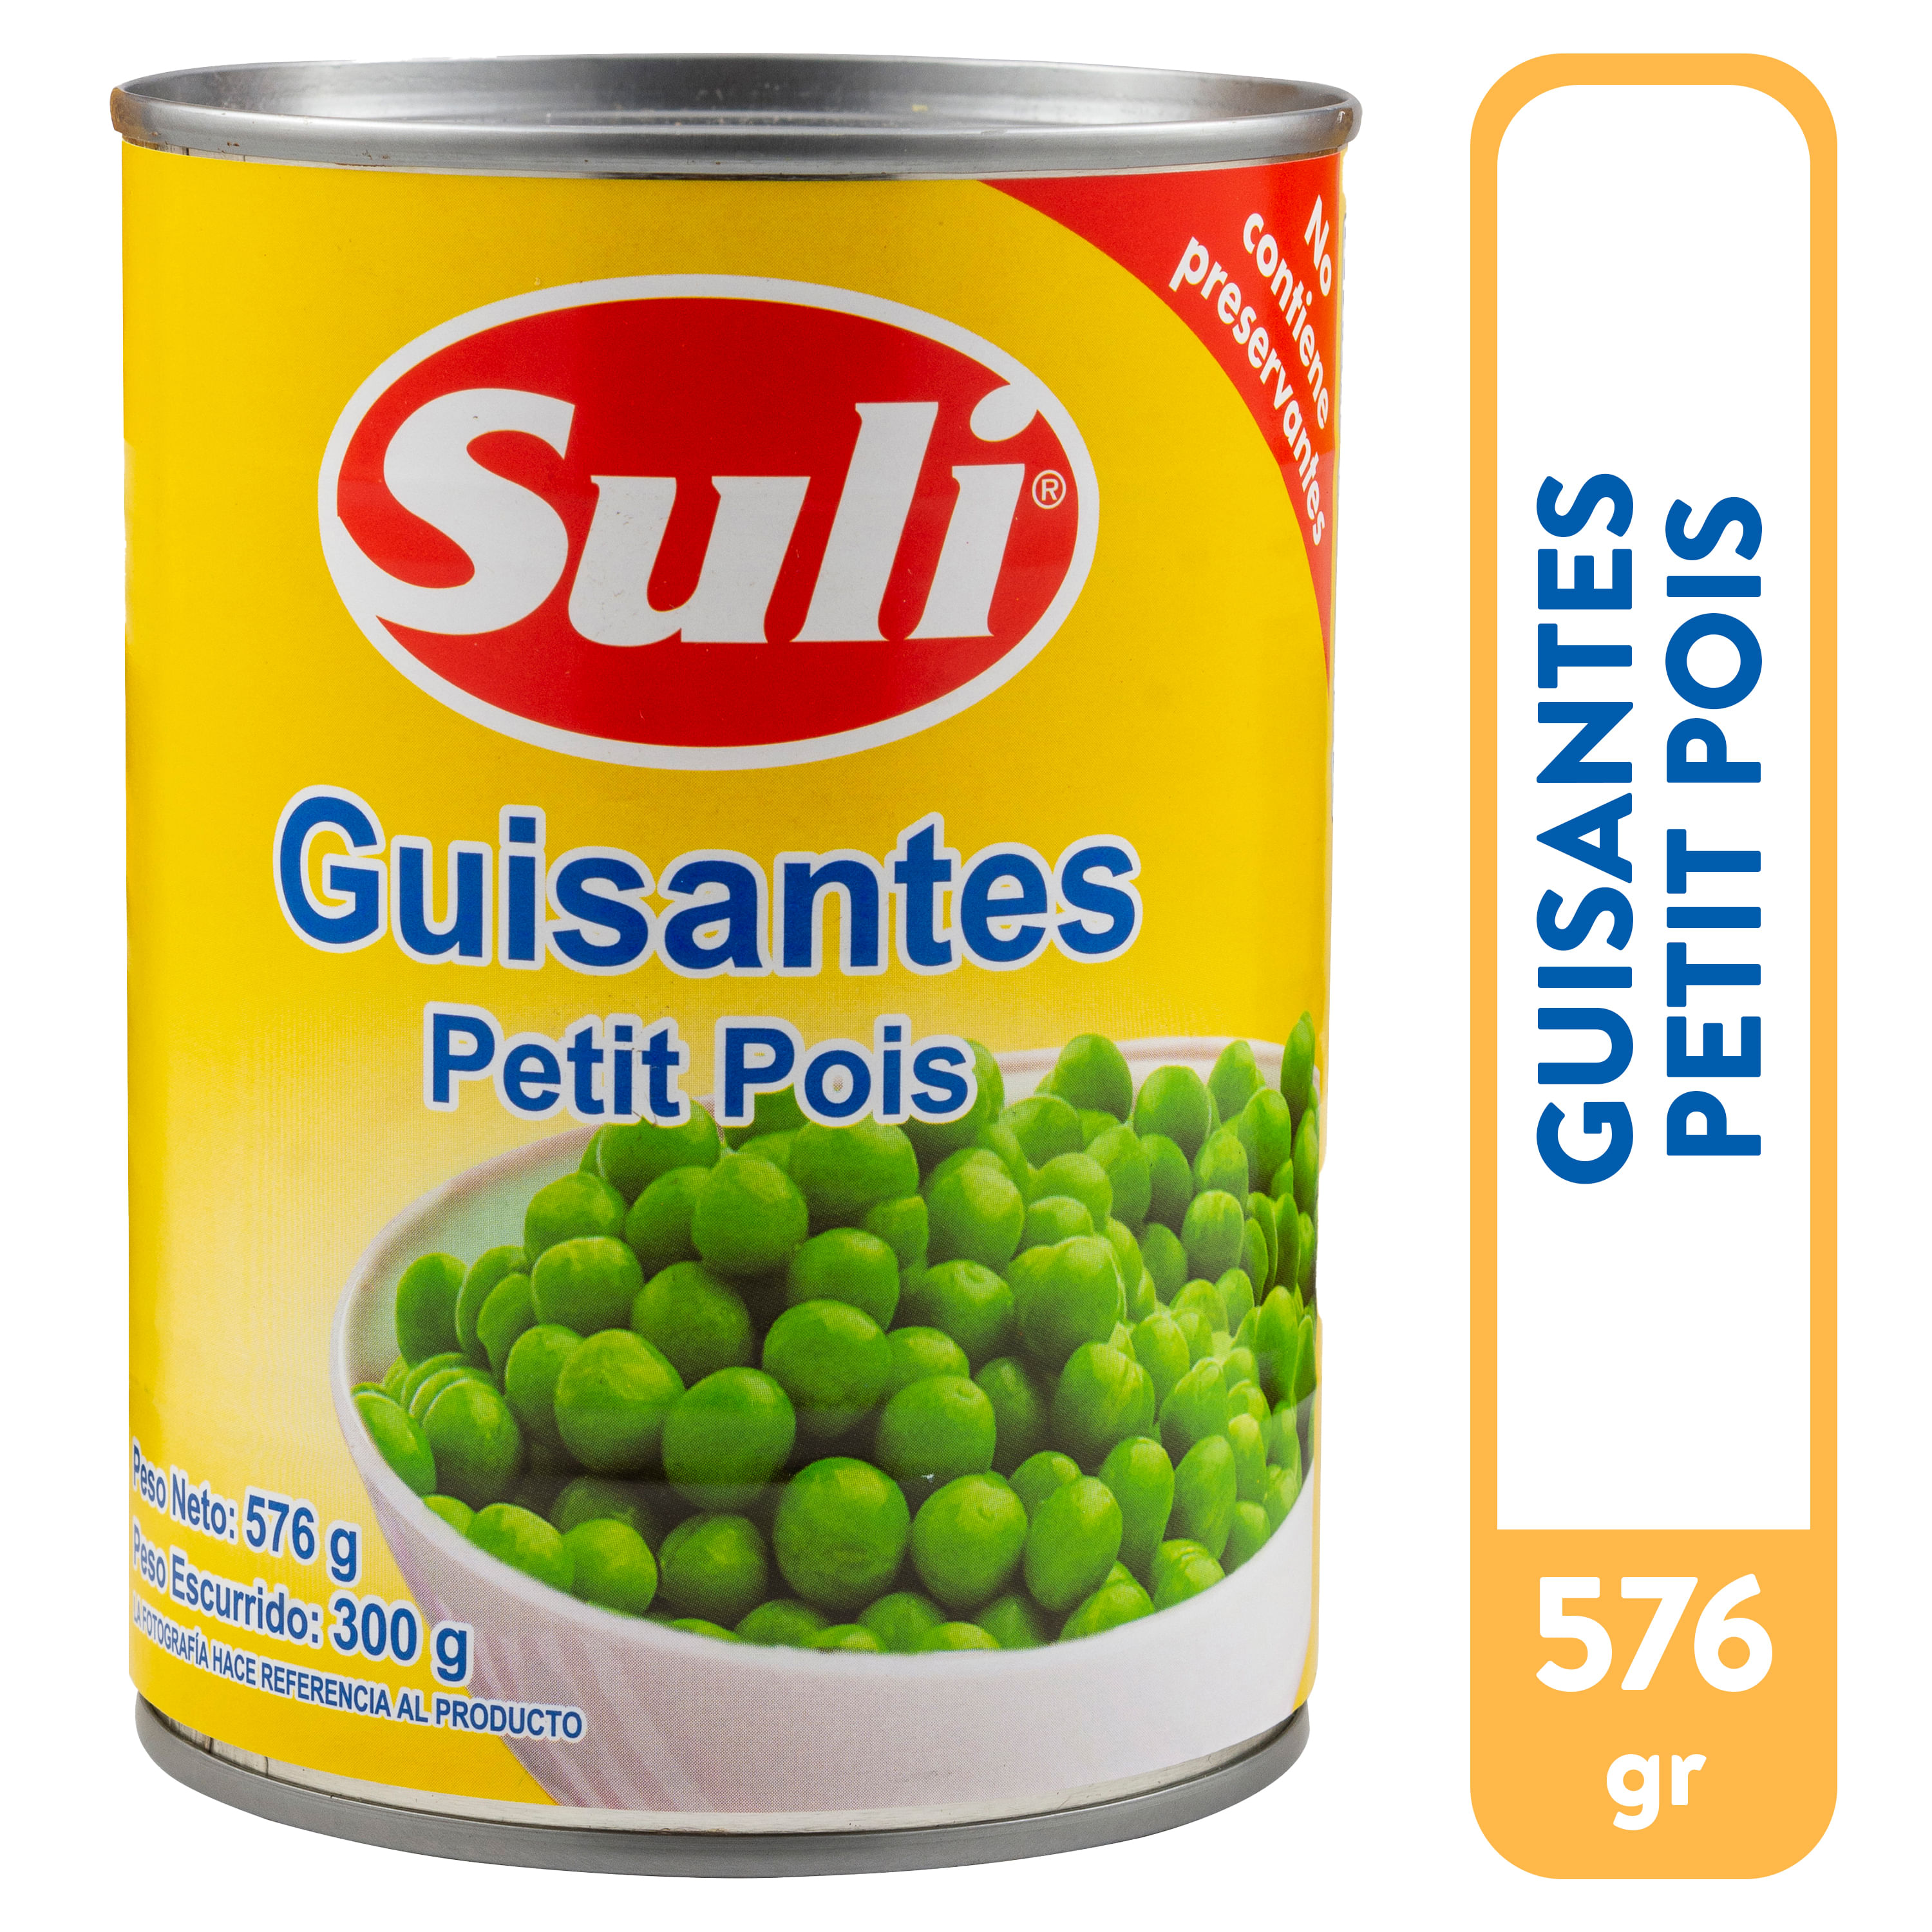 Guisantes-Suli-Petit-Pois-576gr-1-31573